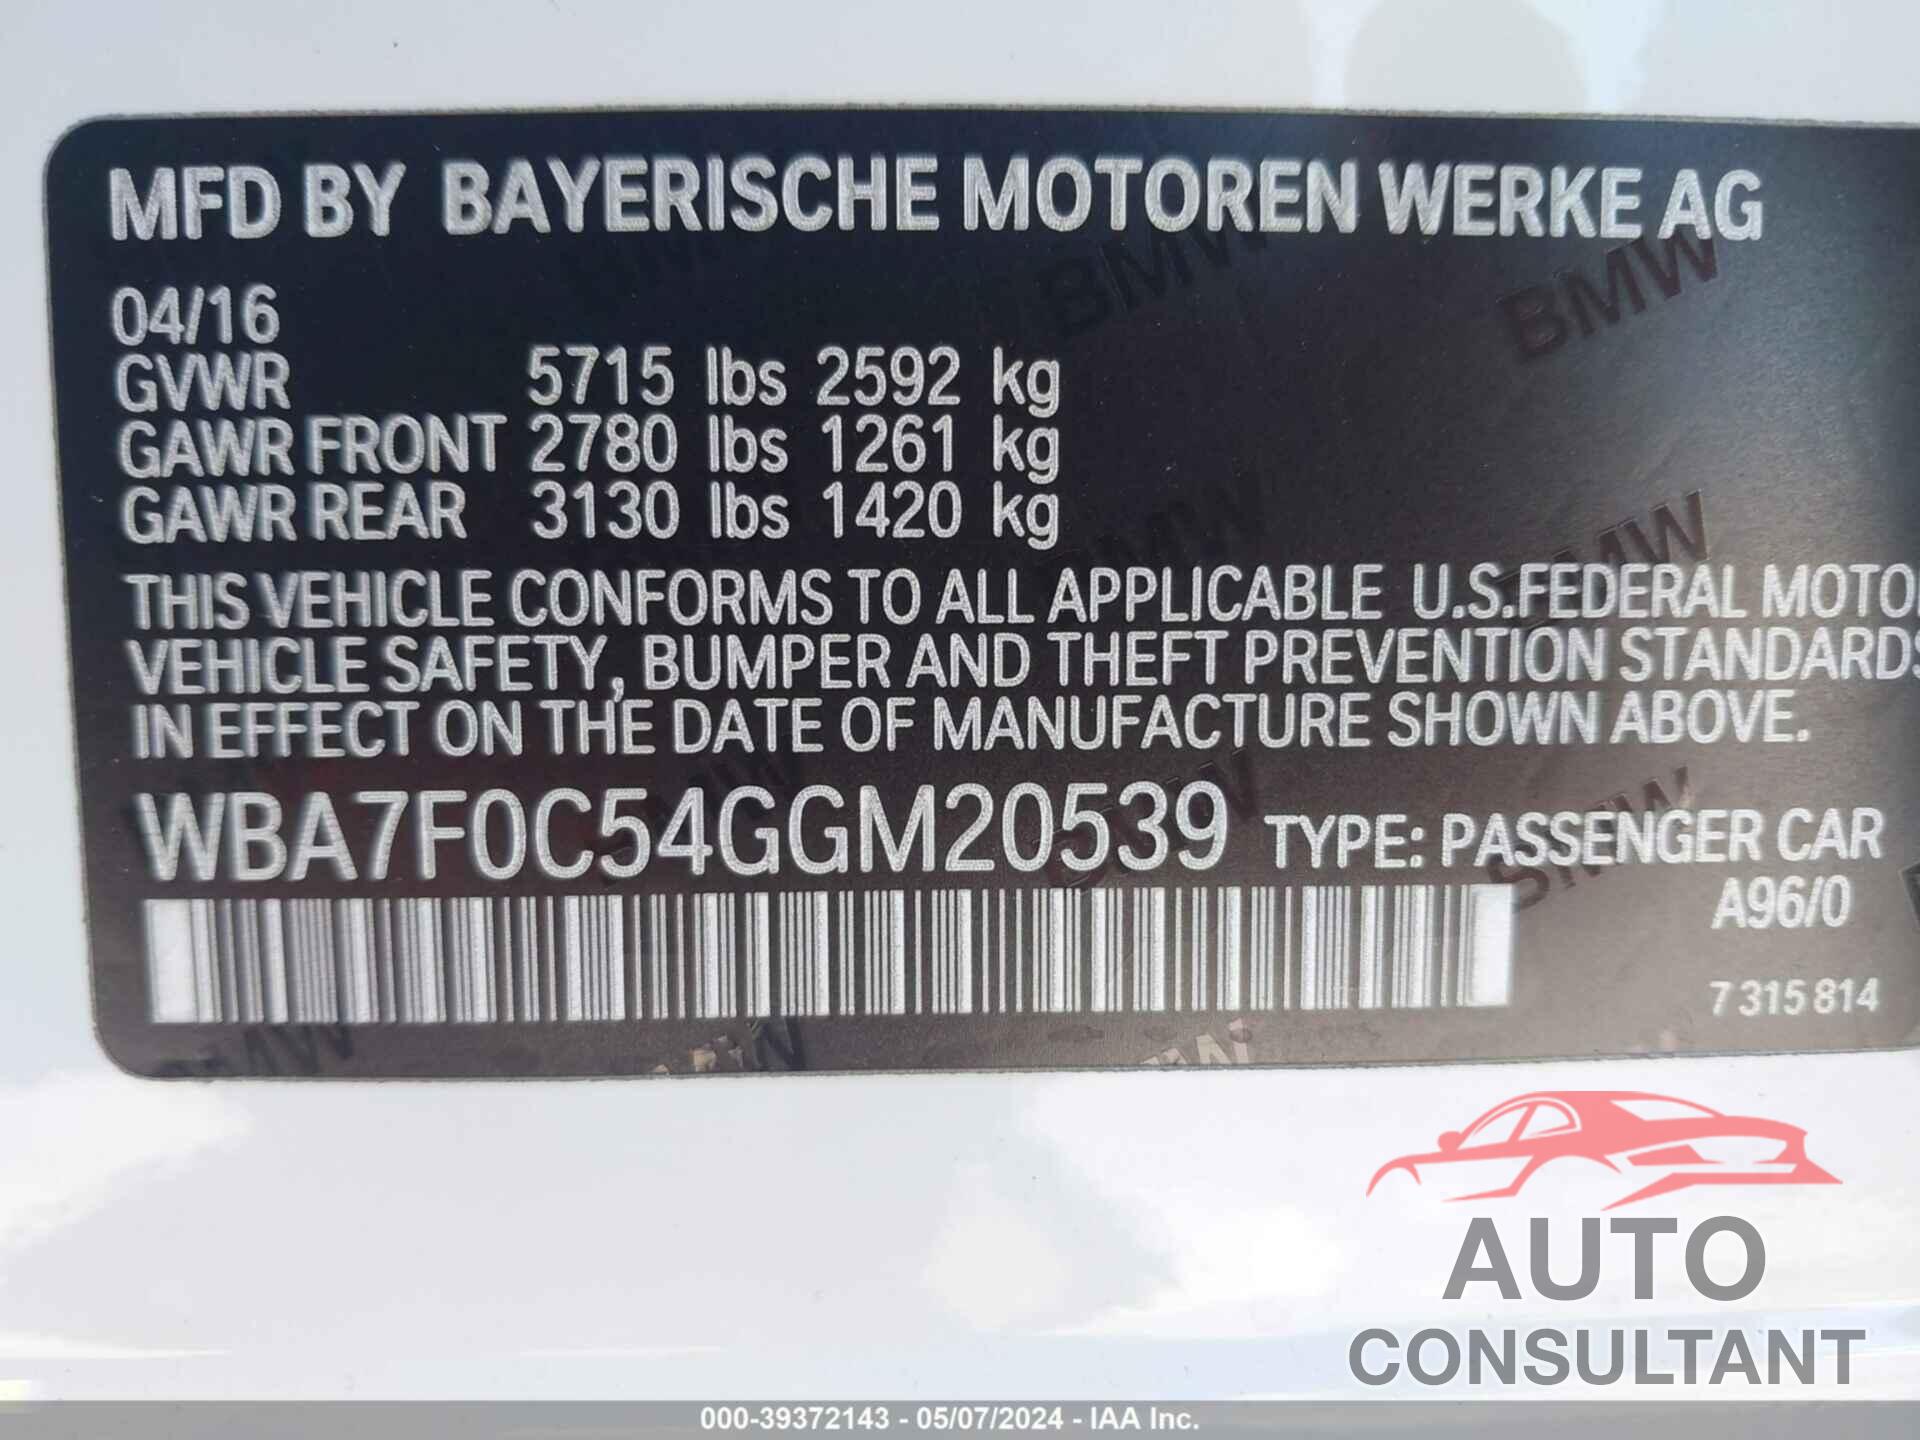 BMW 750I 2016 - WBA7F0C54GGM20539